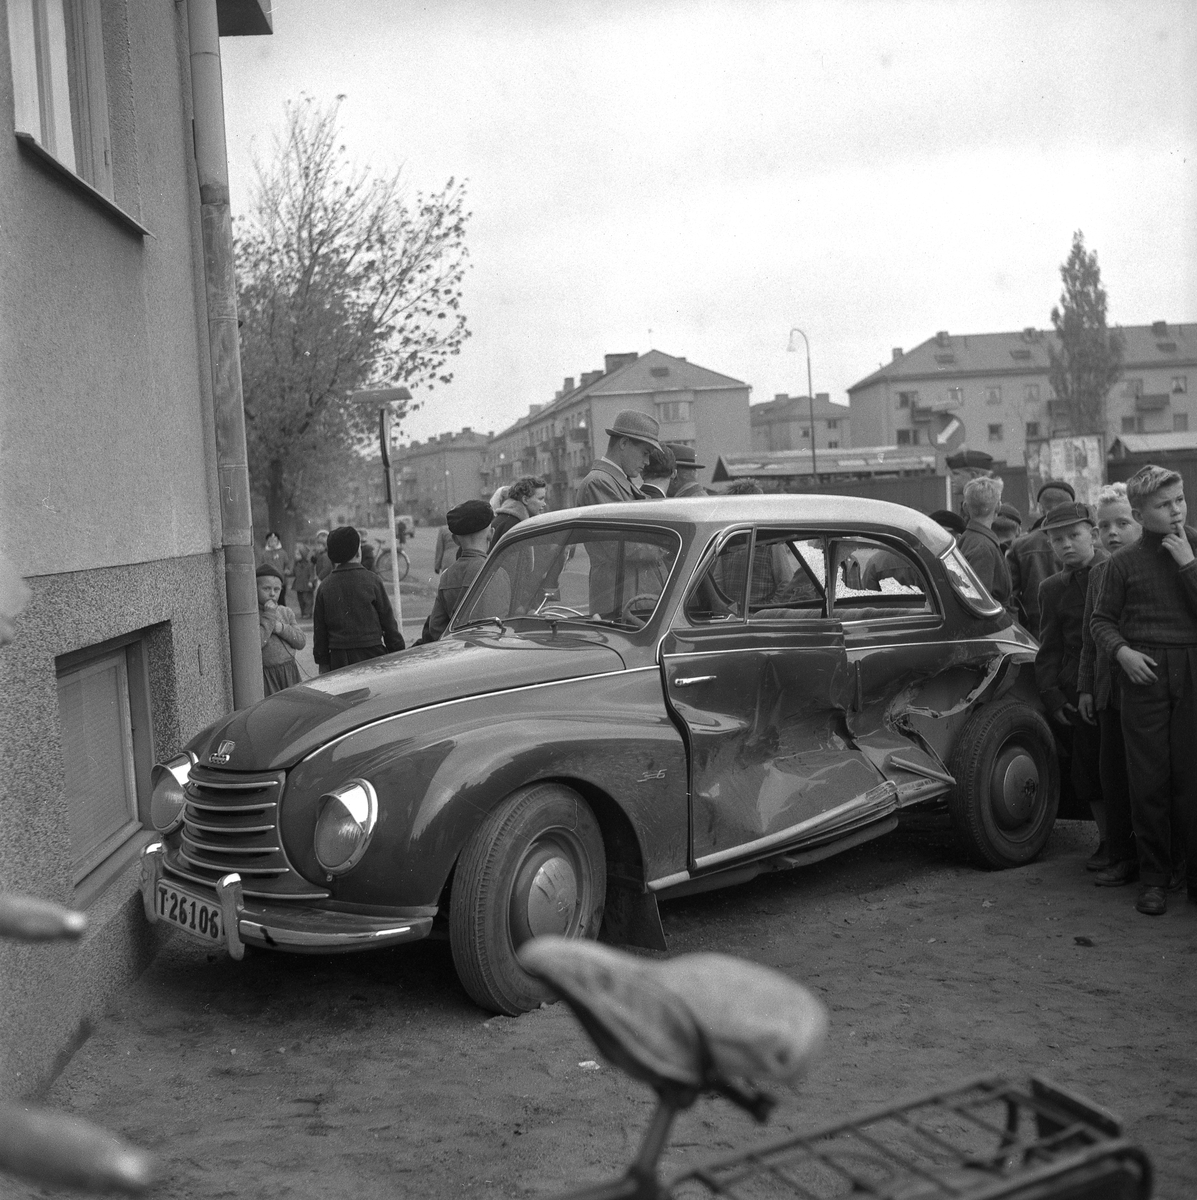 Buss kör på bil.
Oktober 1956.